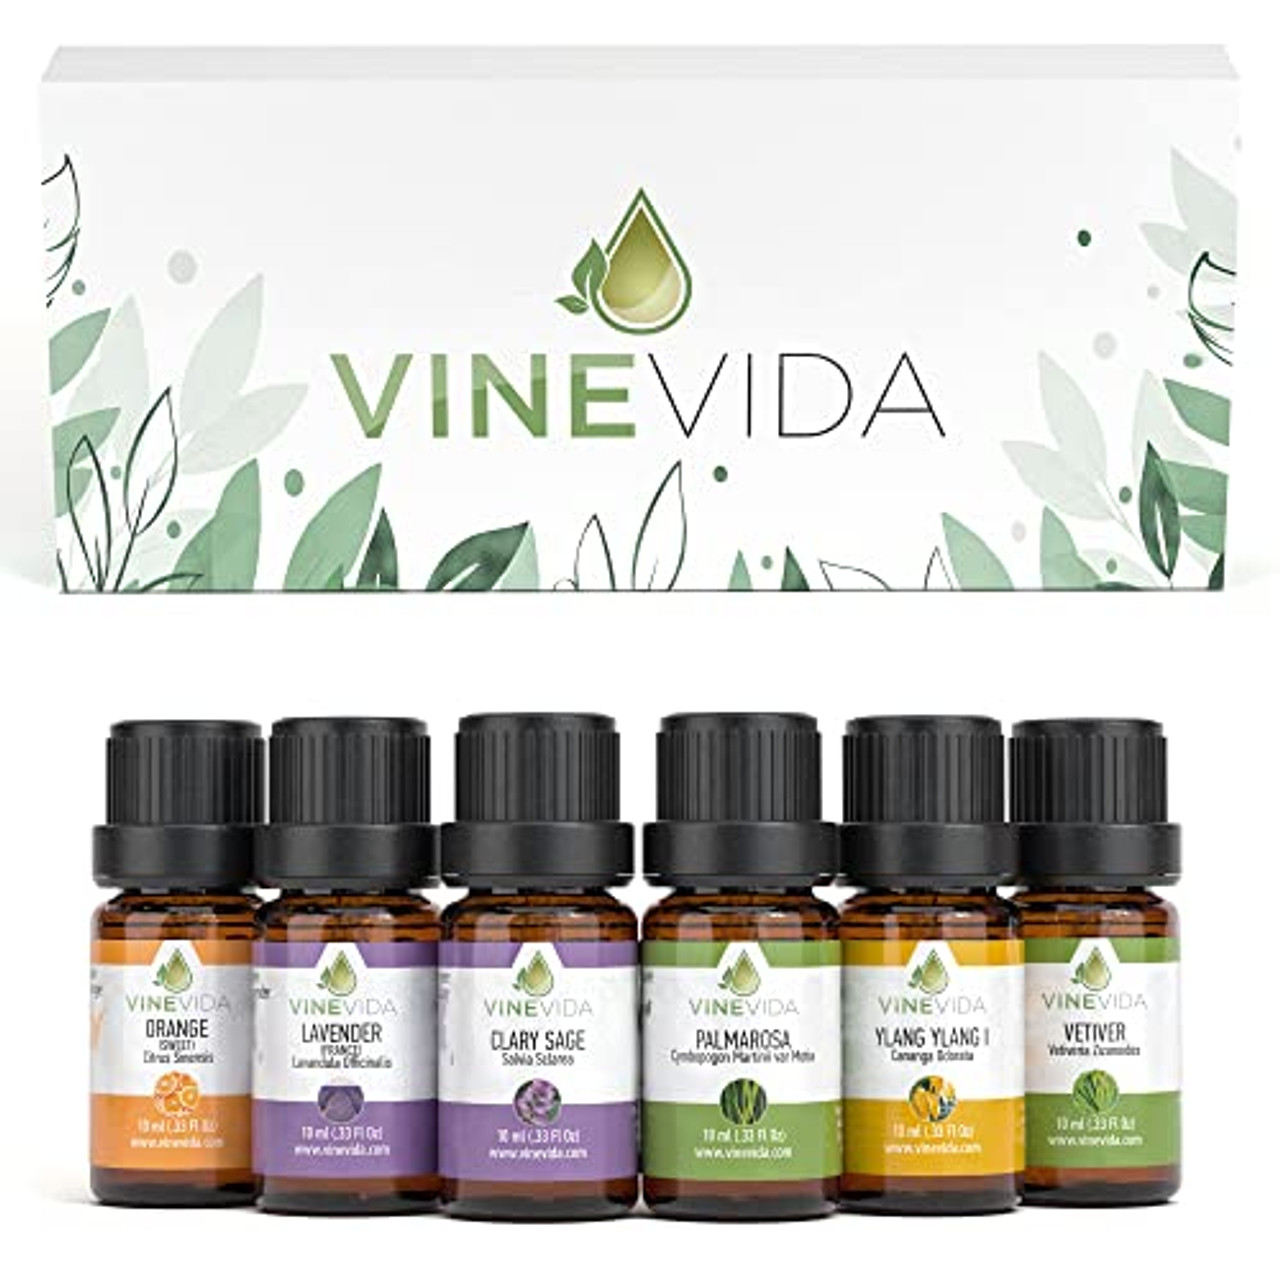 vinevida oil diffusers｜TikTok Search